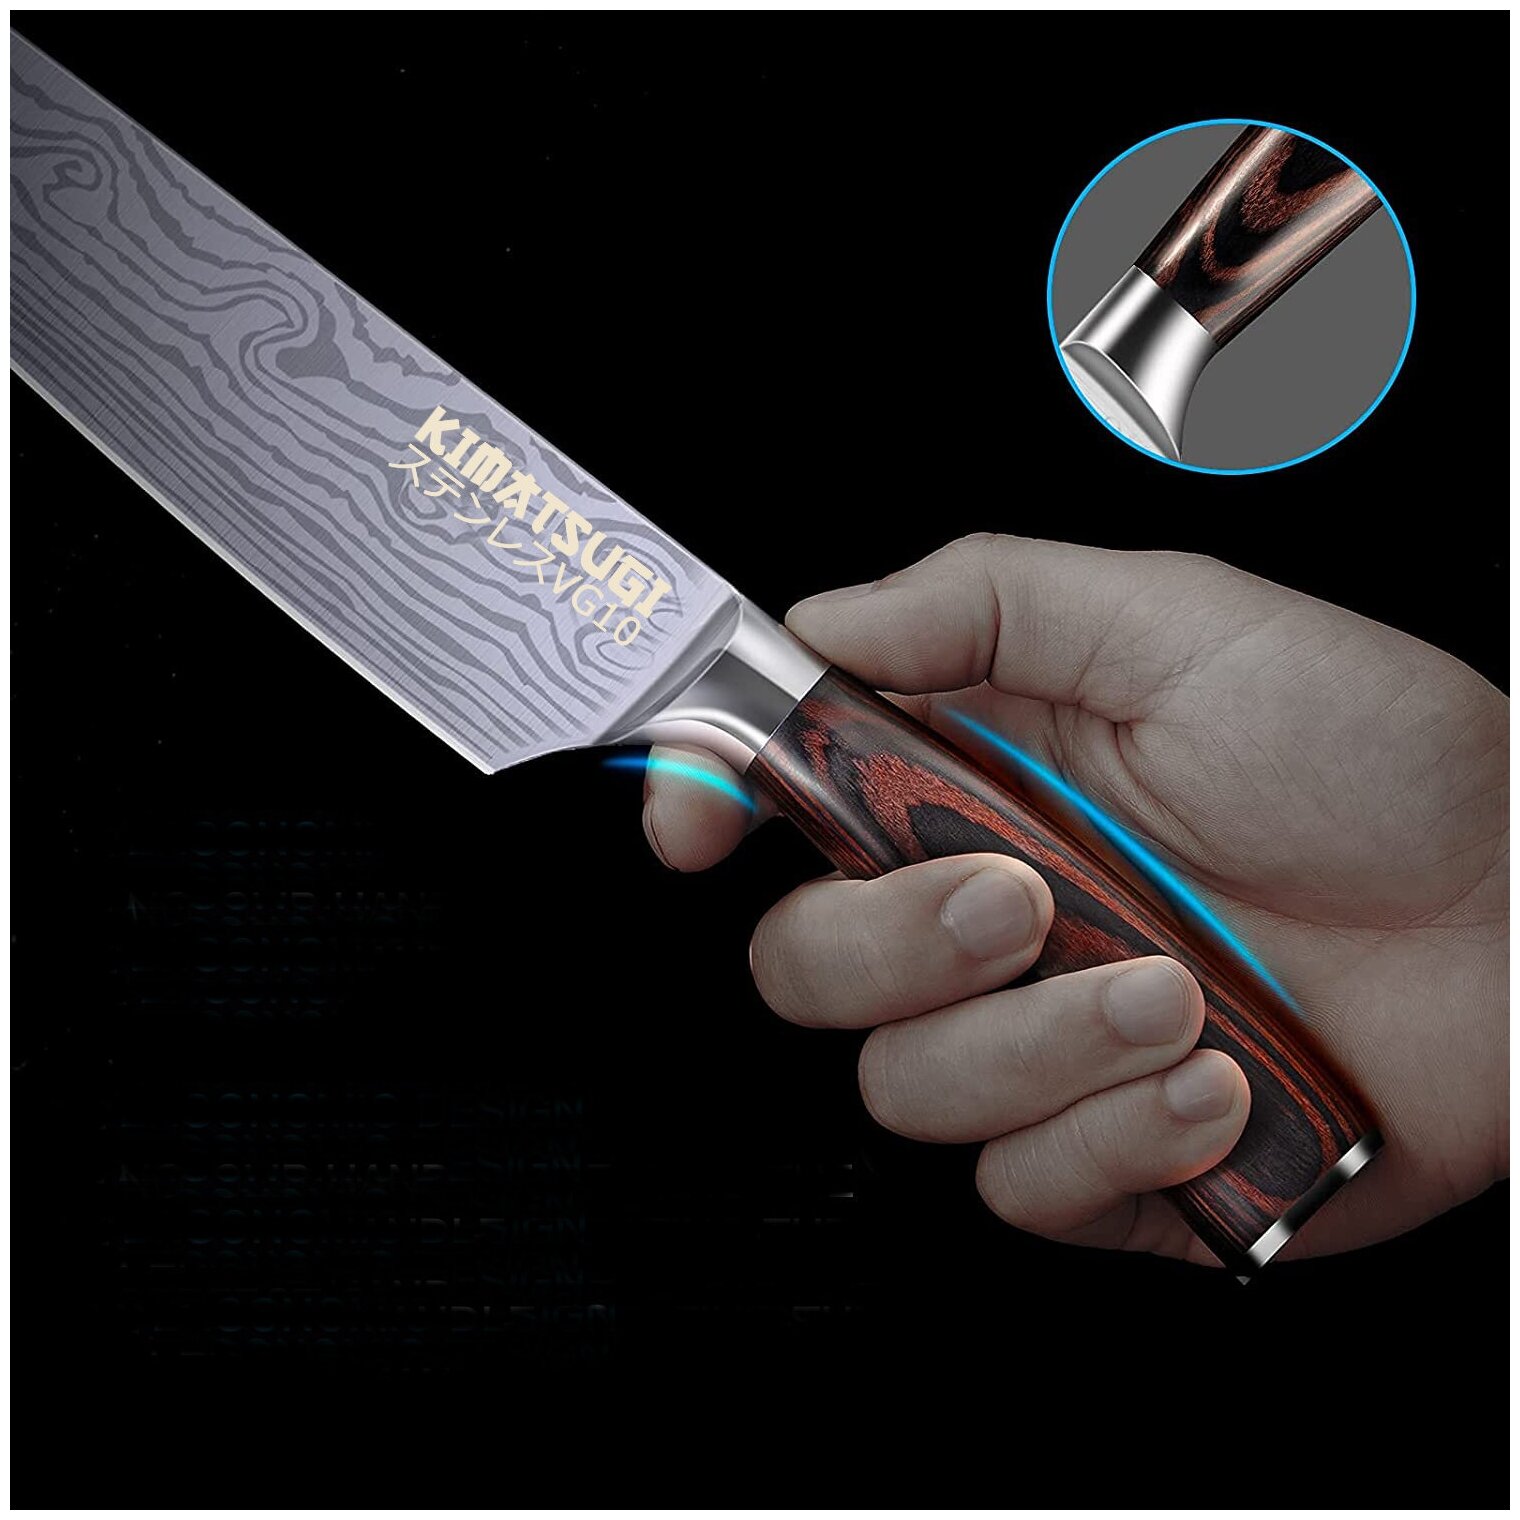 Японский кухонный поварской нож Kimatsugi / Японская сталь VG10 / Длина лезвия 21 см / В подарочном кейсе